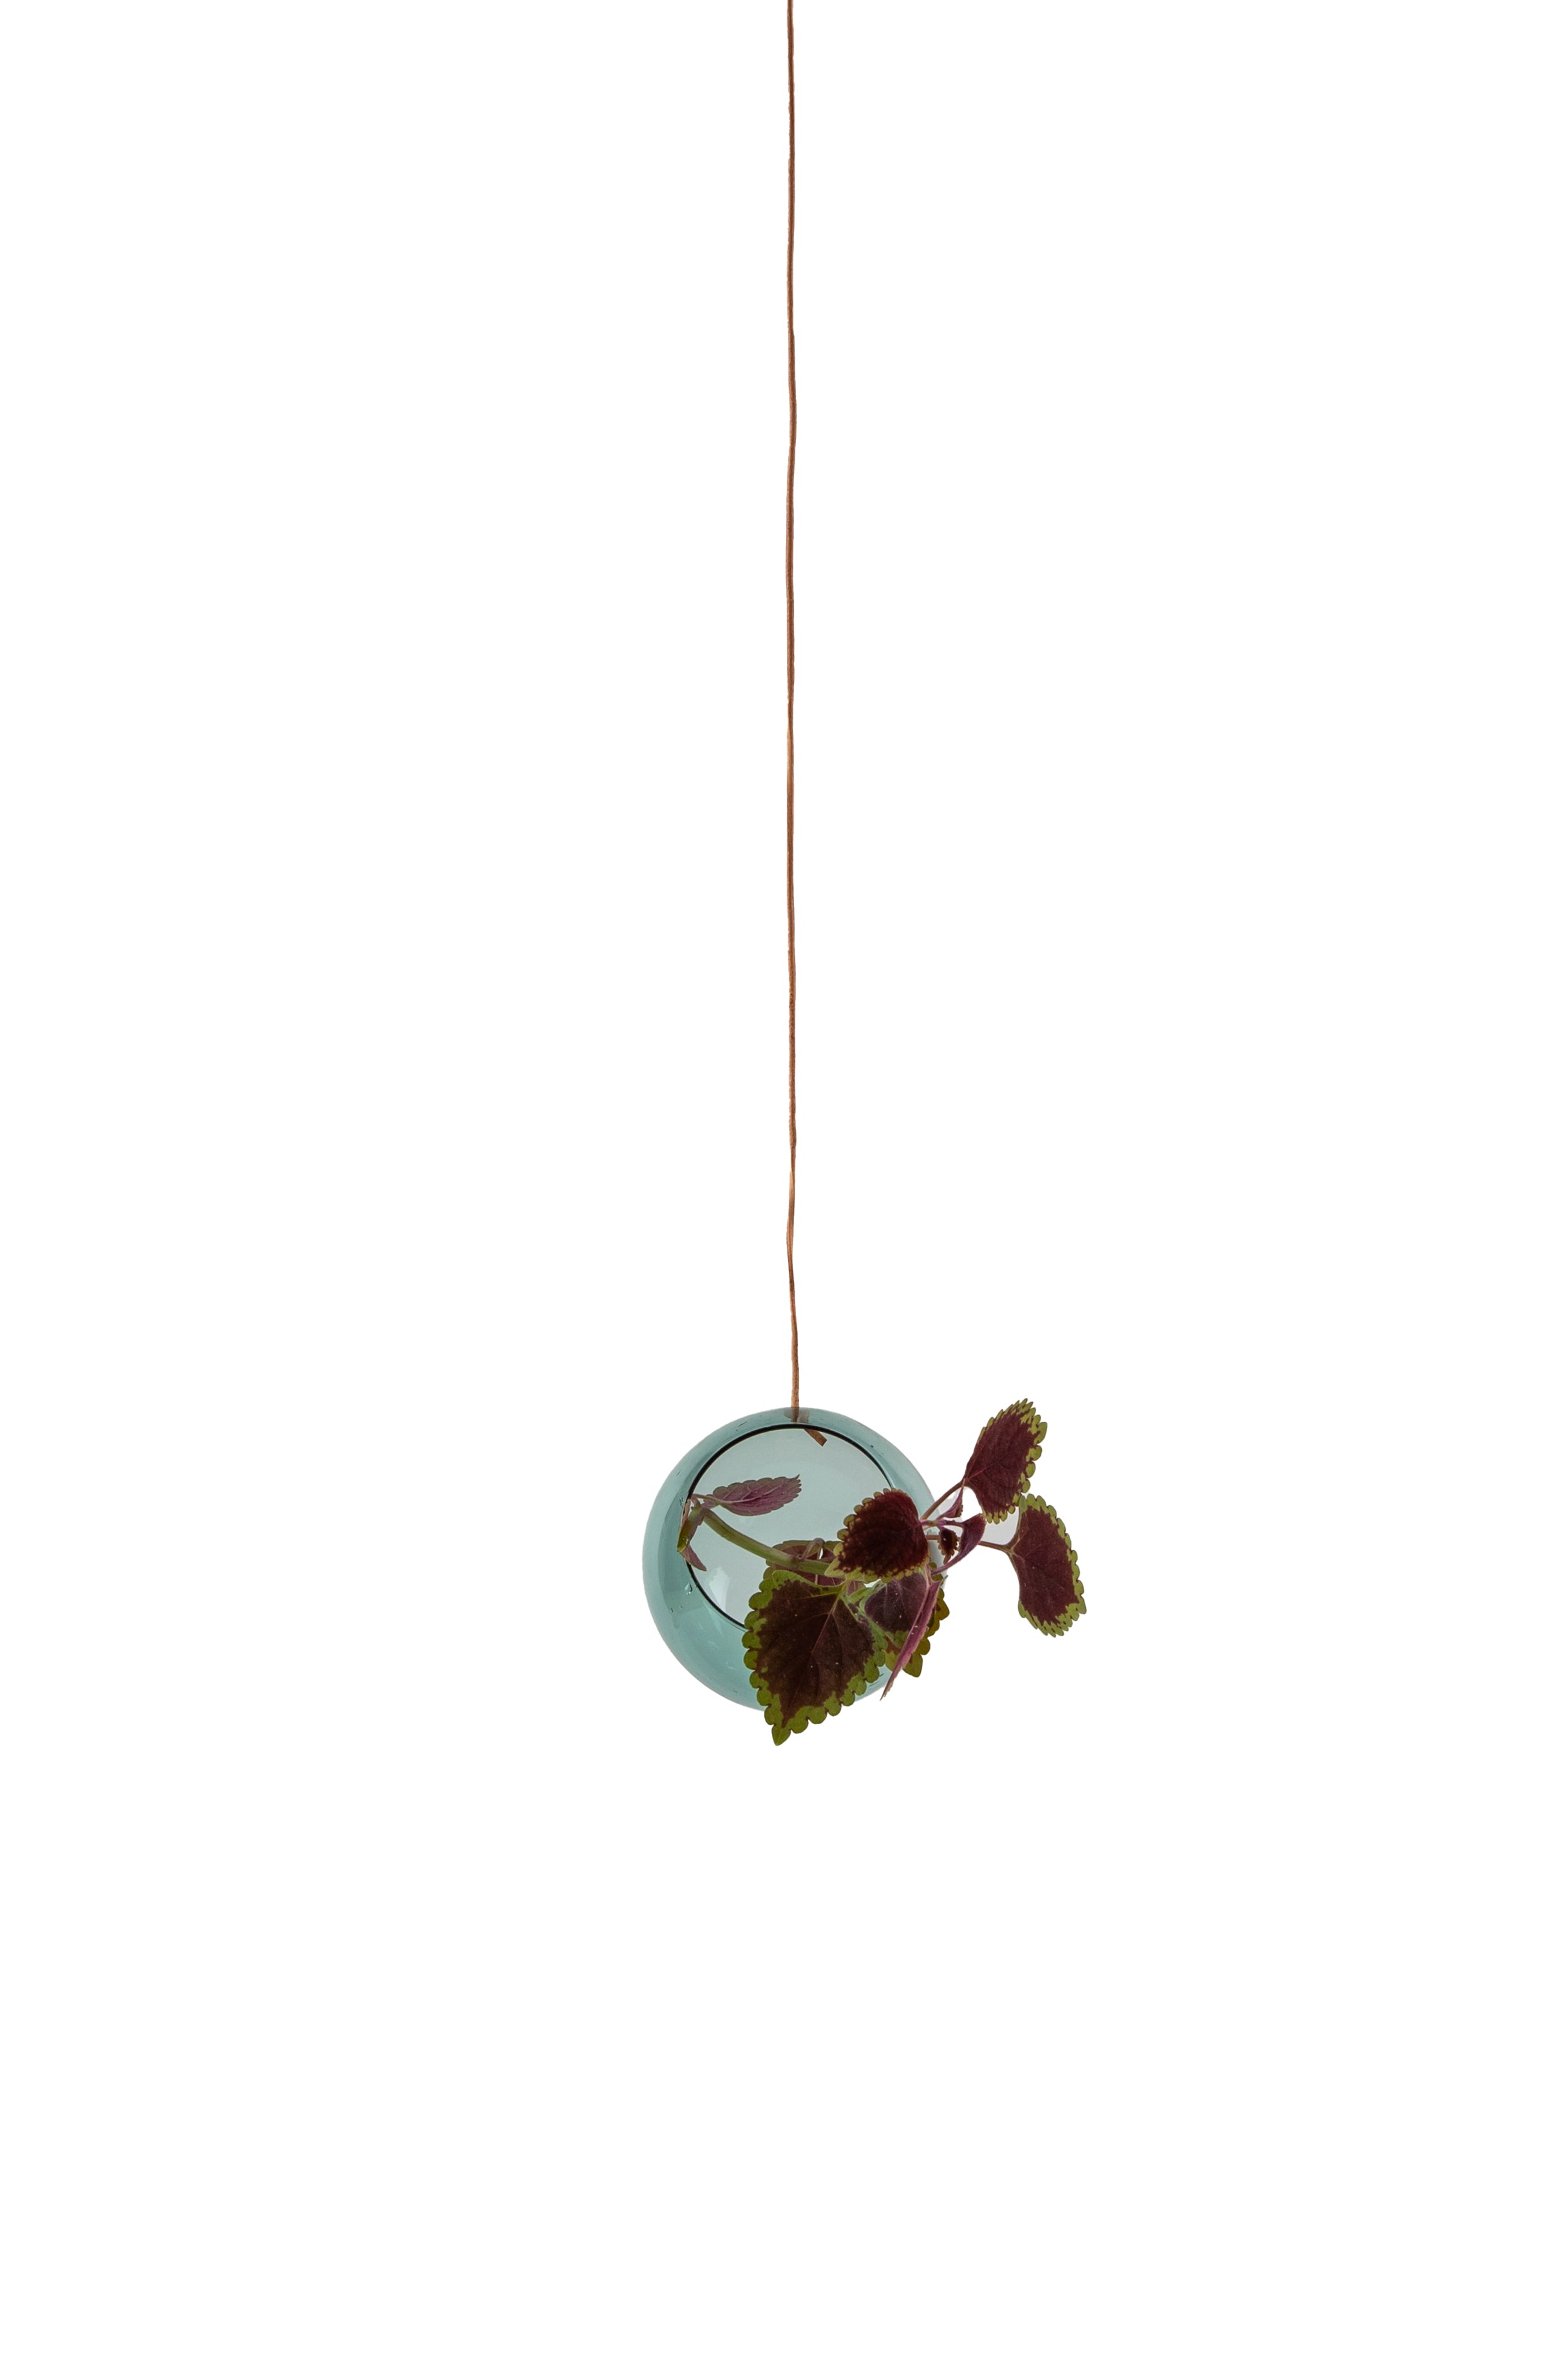 Studio über hängende Pflanzenblasenvase klein, Cyan